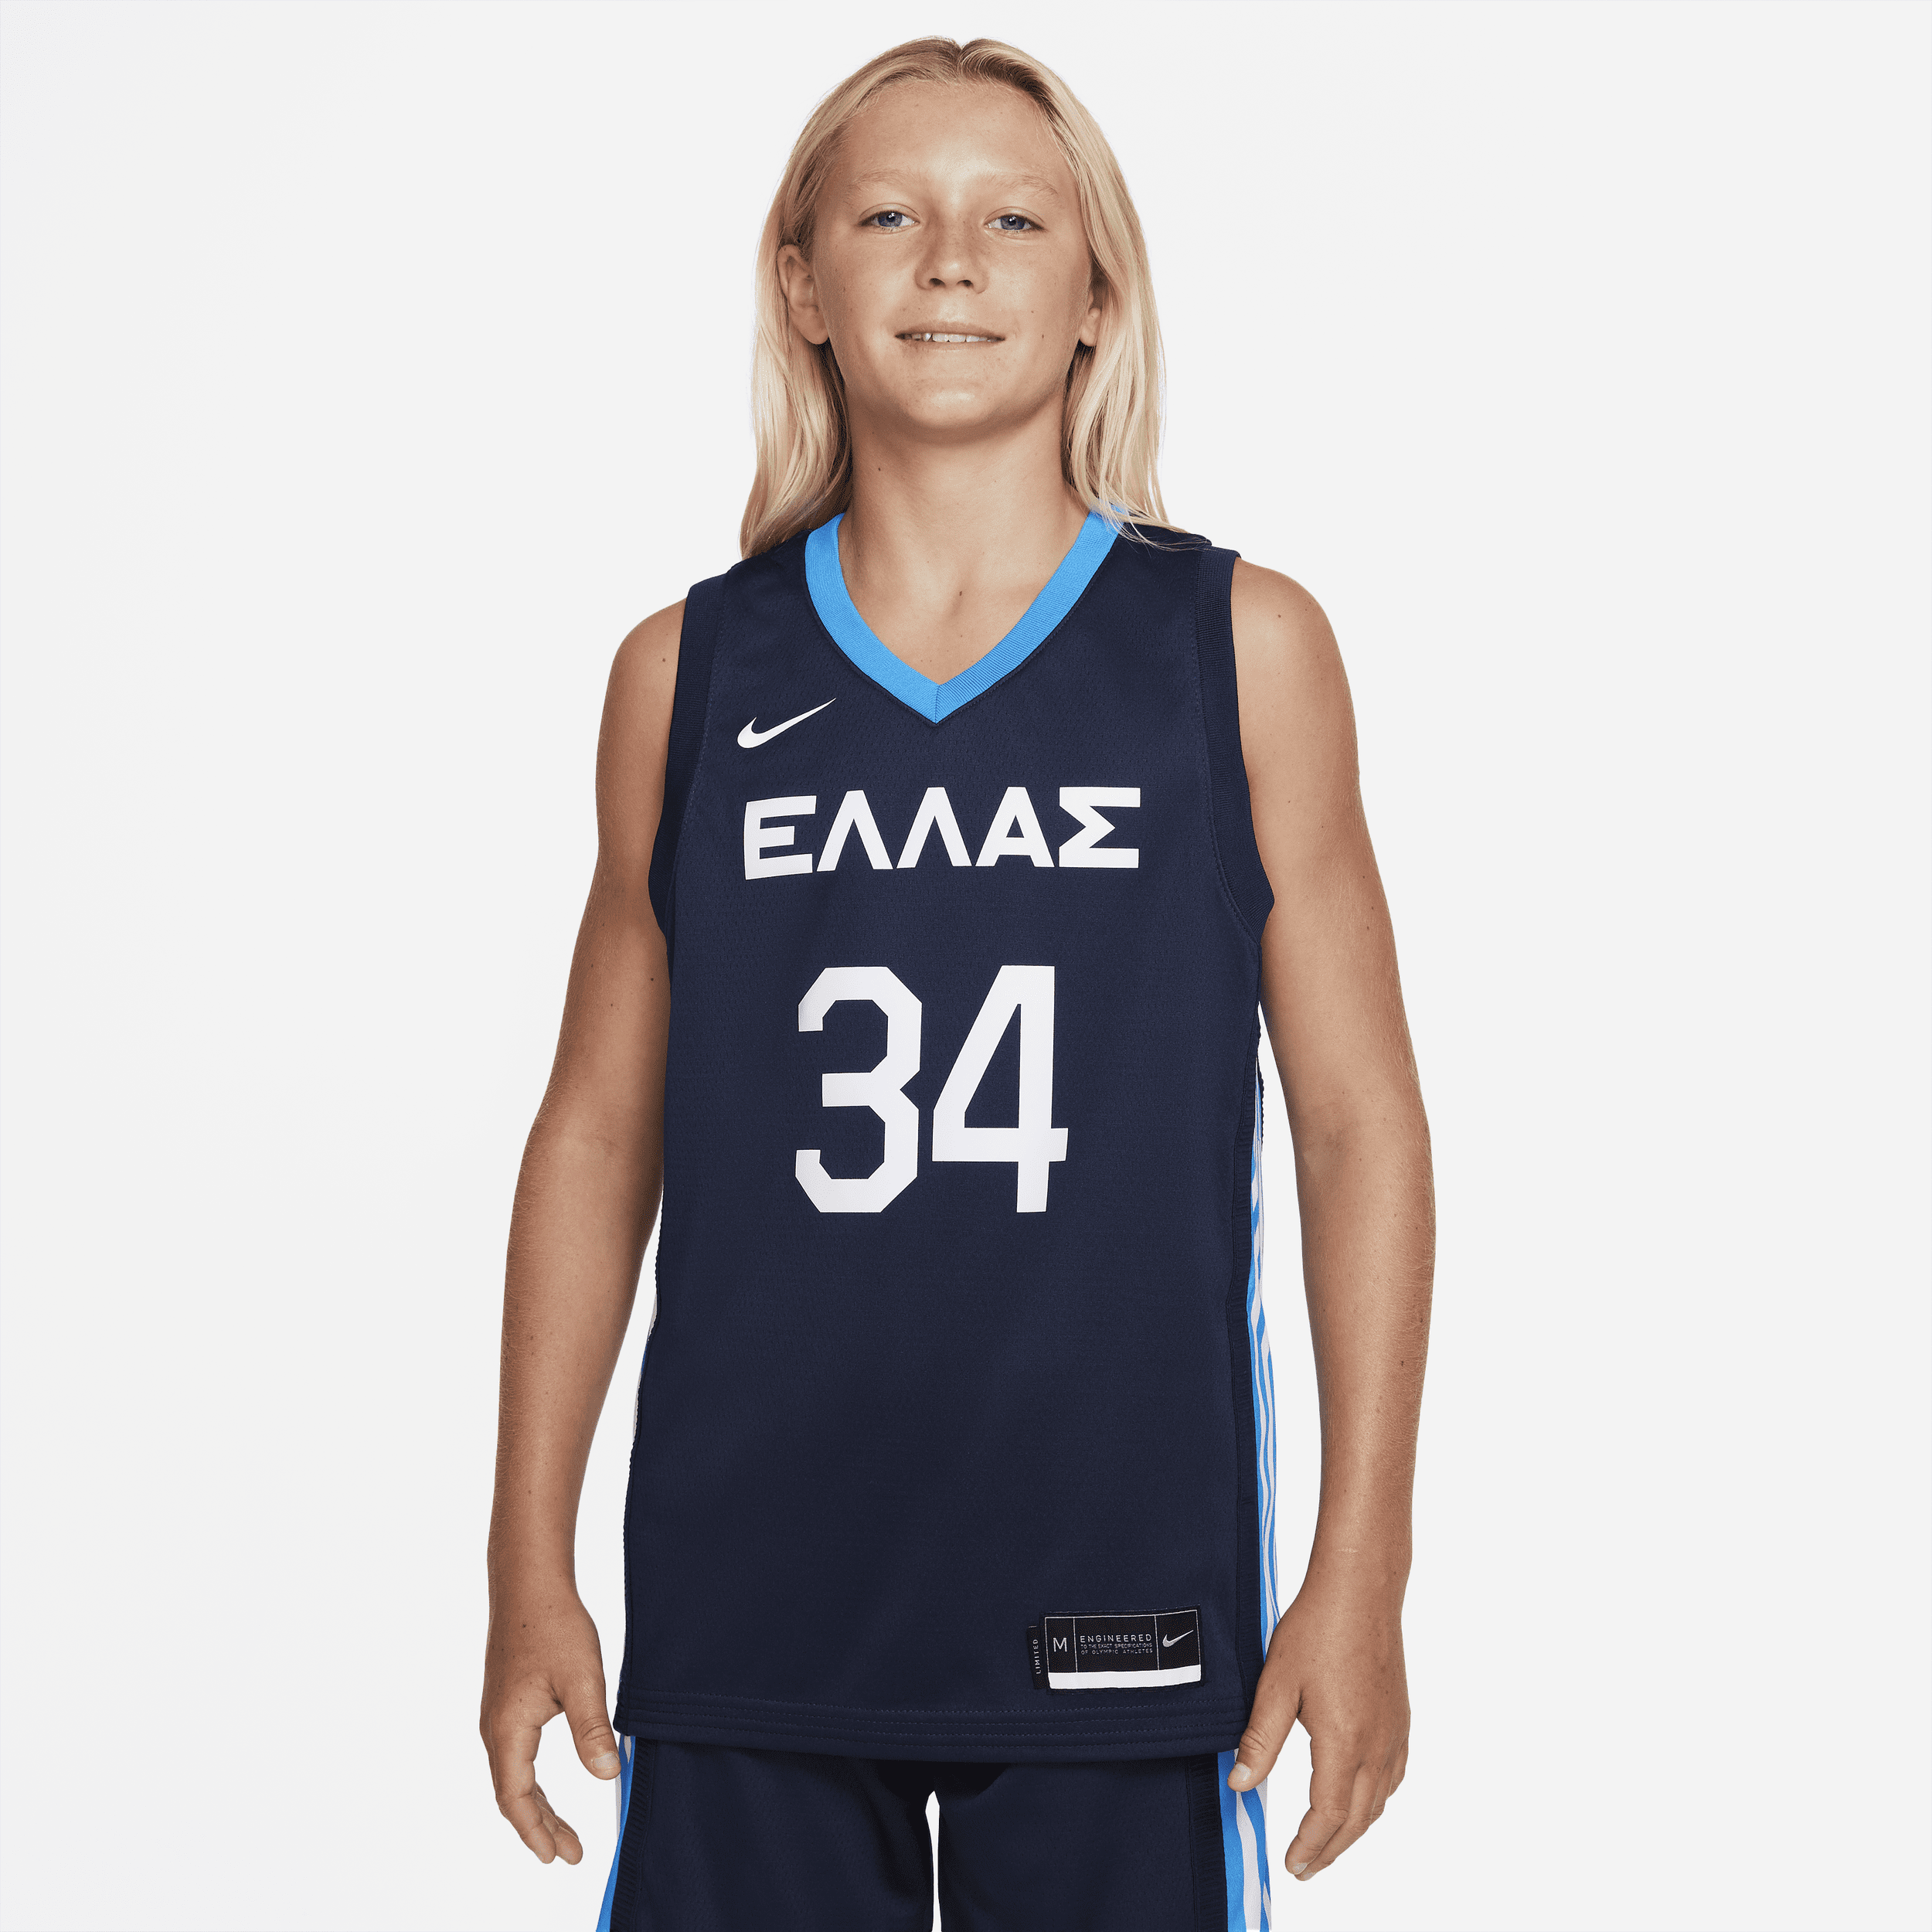 Grækenland (Road) Nike-basketballtrøje til større børn - blå